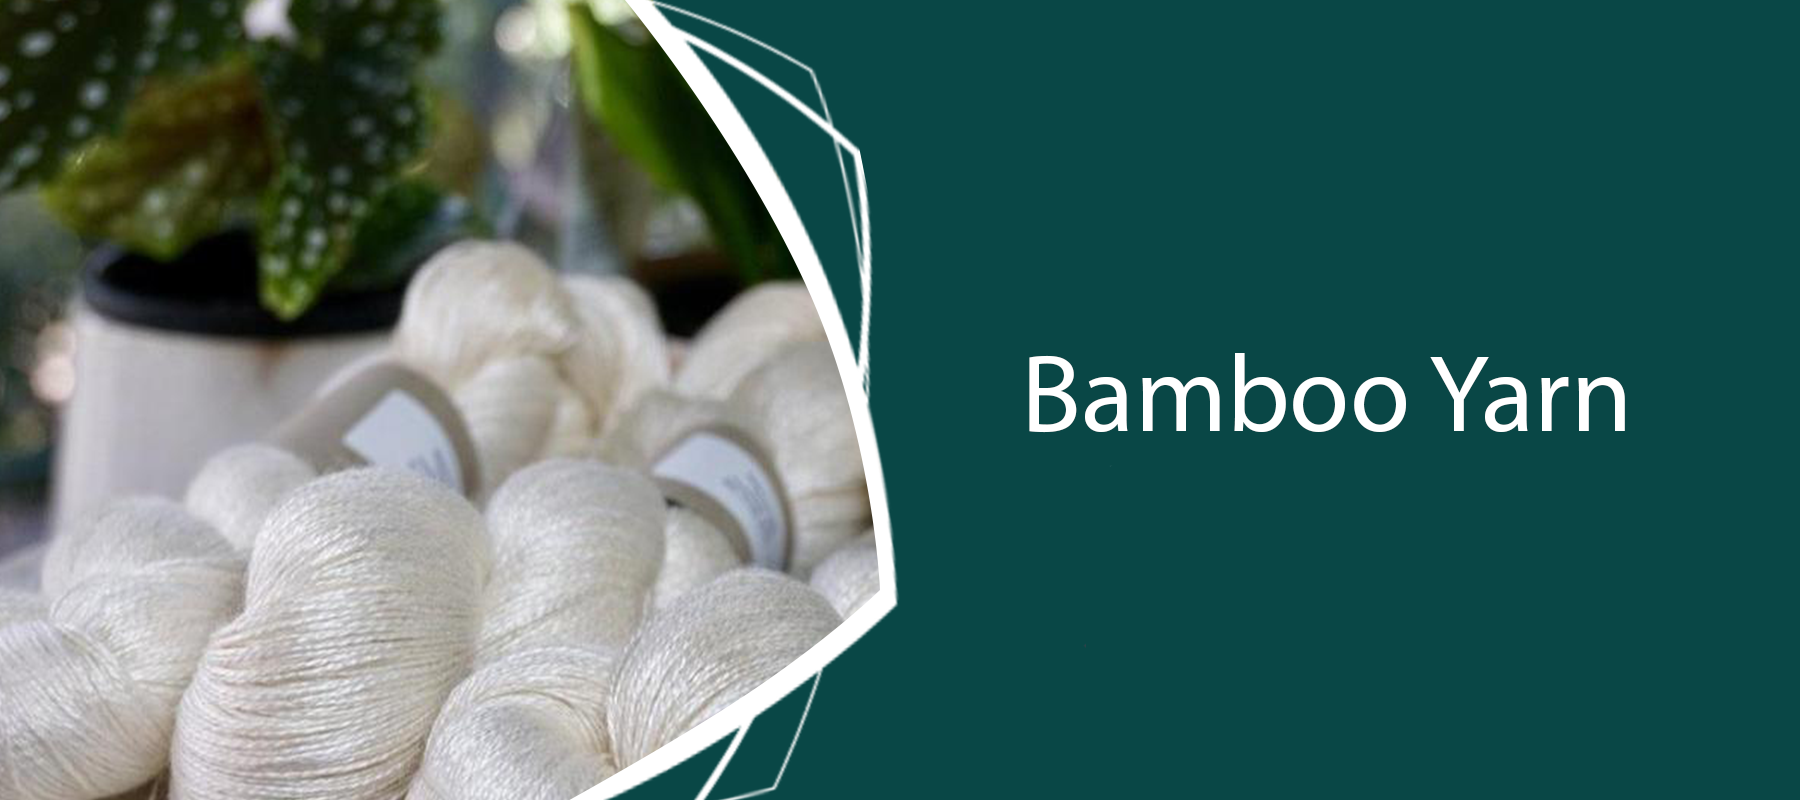 Bamboo Yarn Australia: Weaving & Knitting Handicraft Art